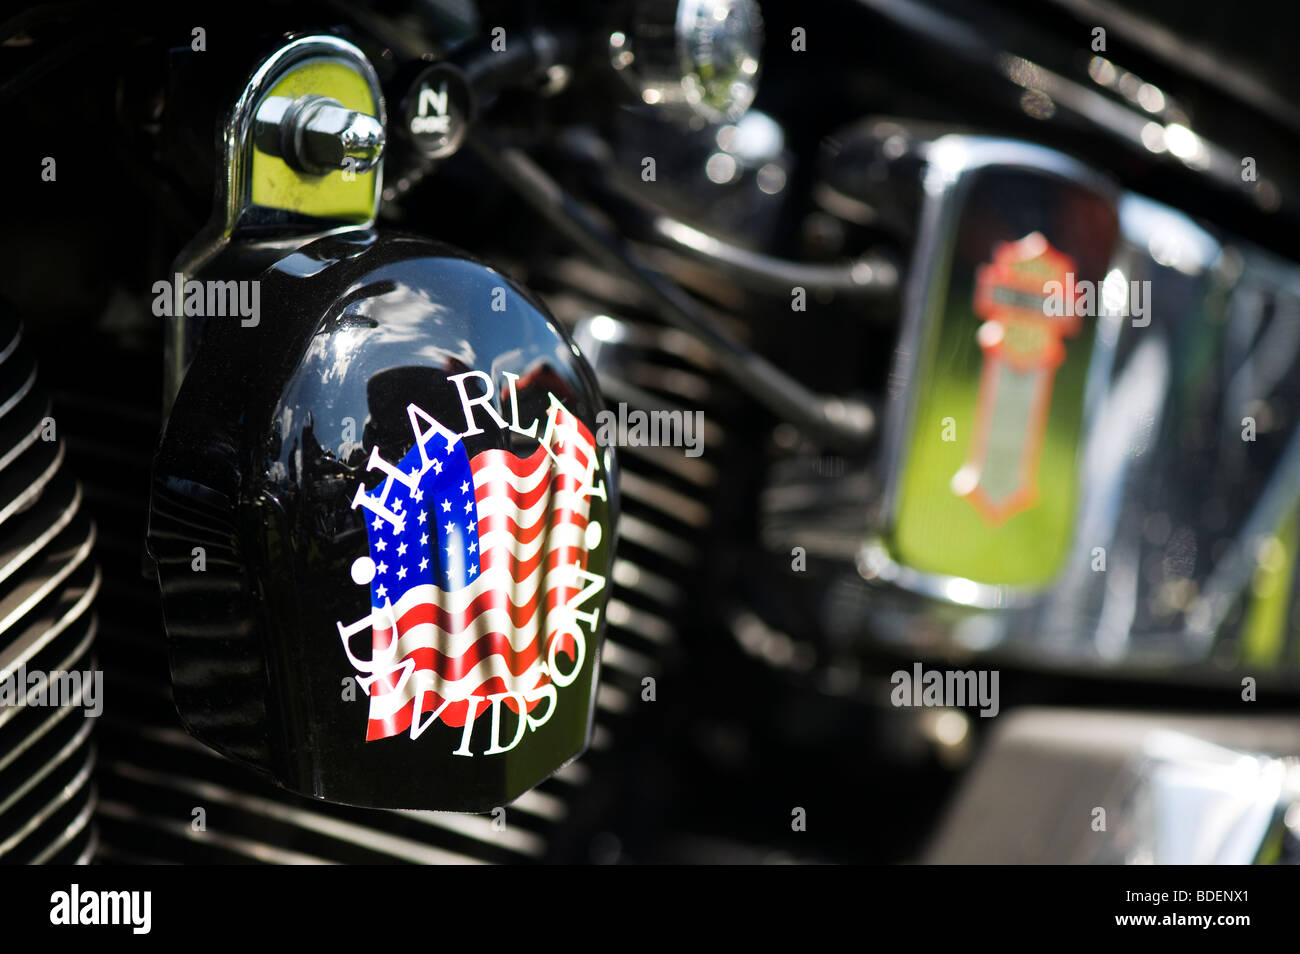 Moto Harley Davidson, avec des travaux de peinture personnalisée drapeau américain Banque D'Images